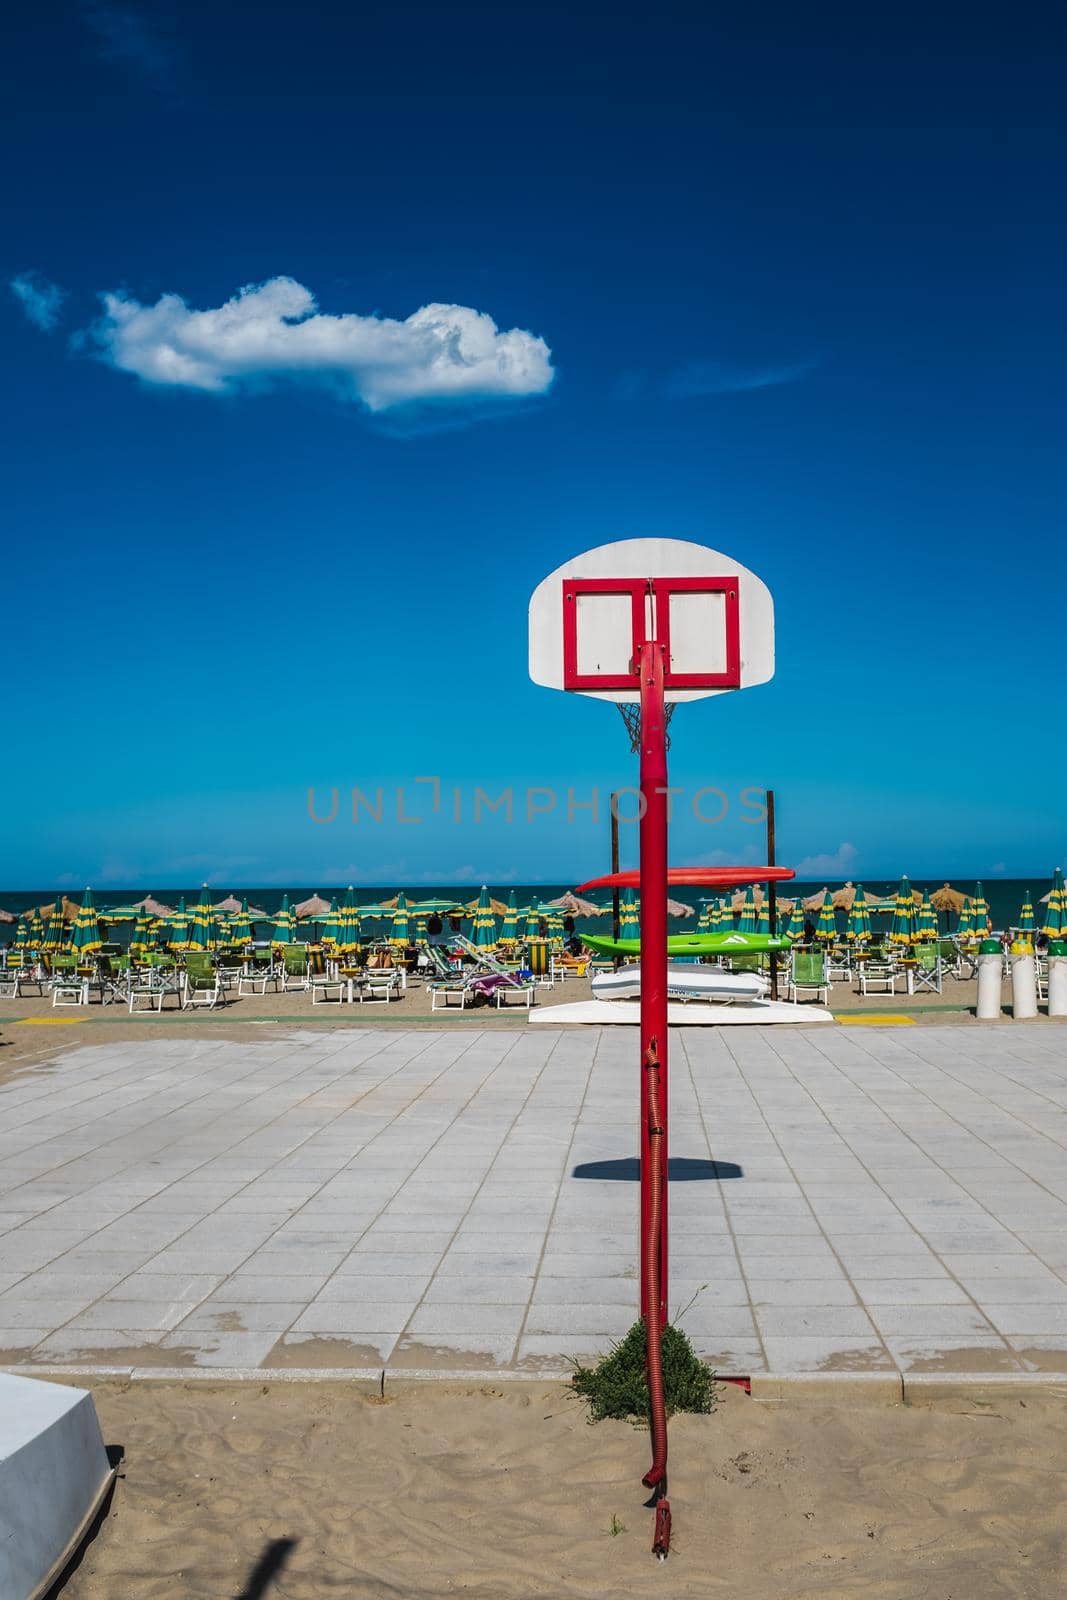 Empty basketball court on sea against blu sky. by Riccarduska